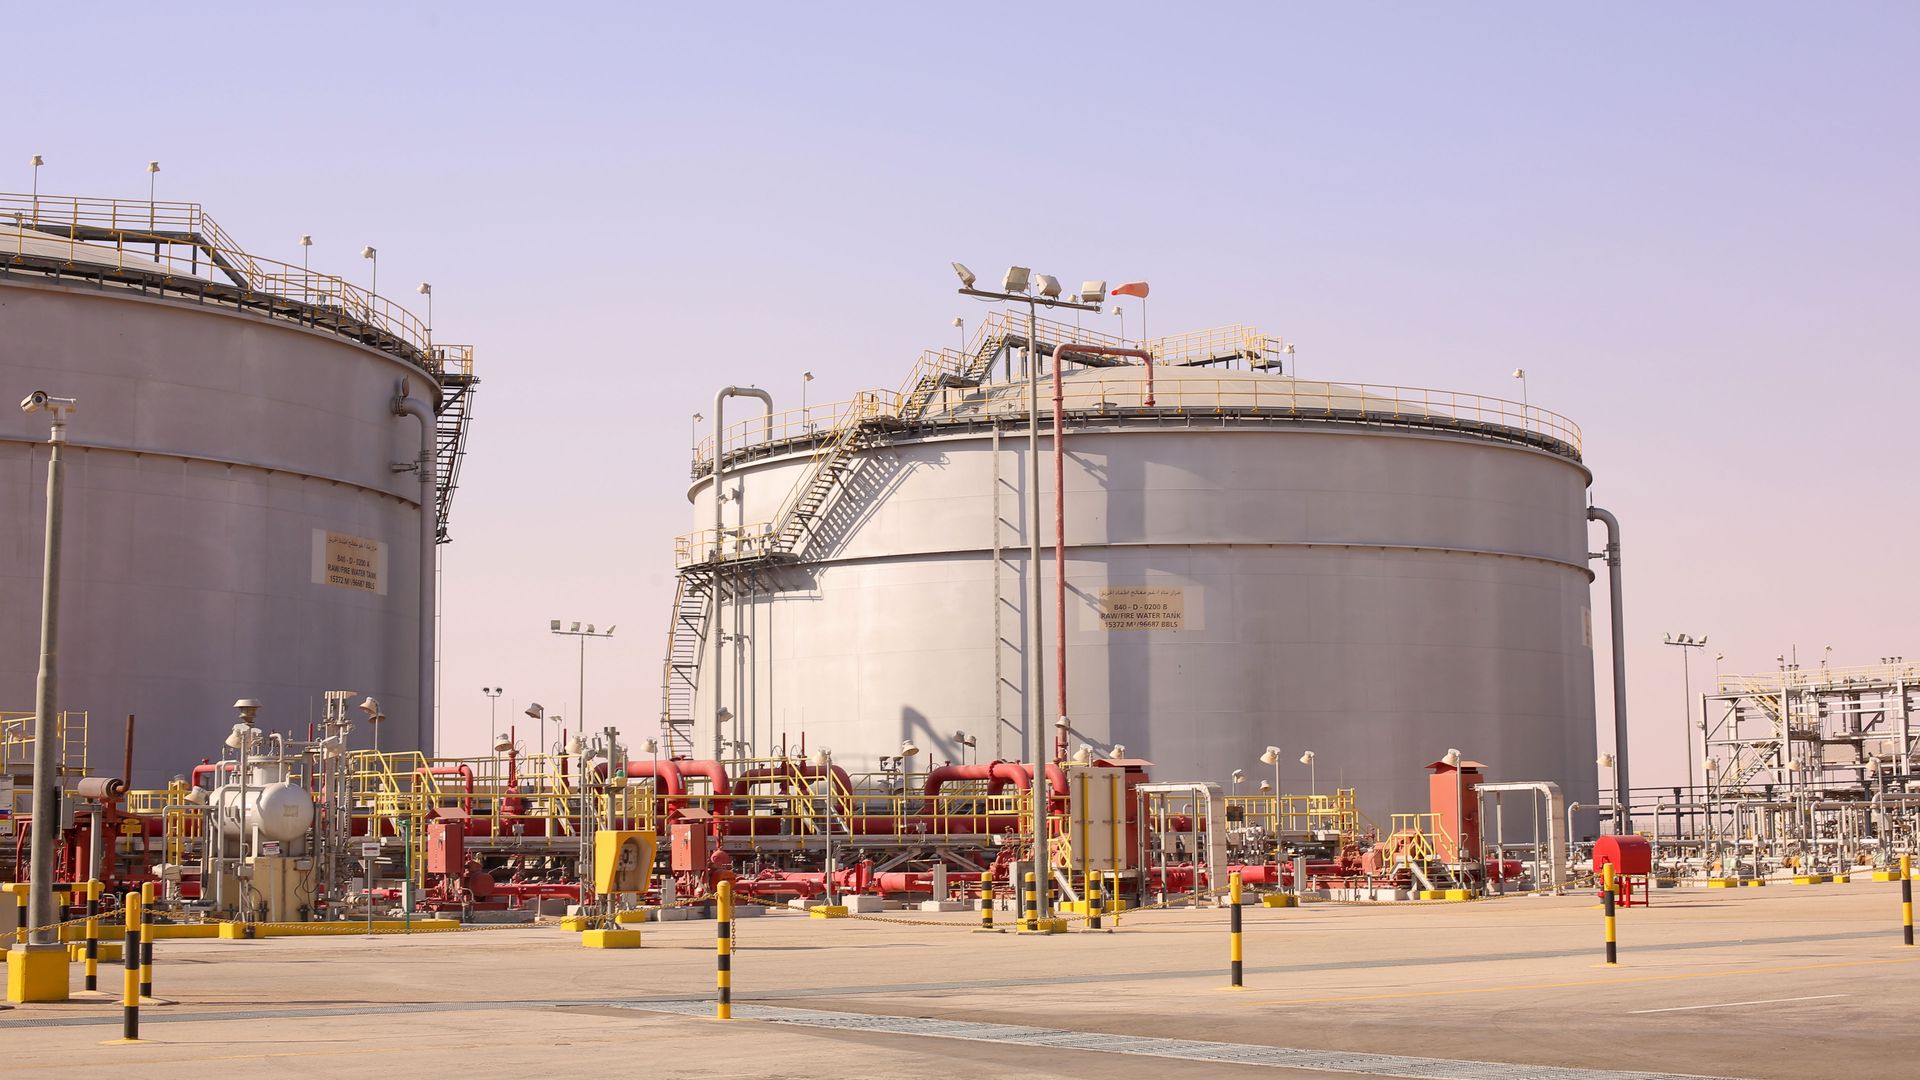 Oil field in Saudi Arabia